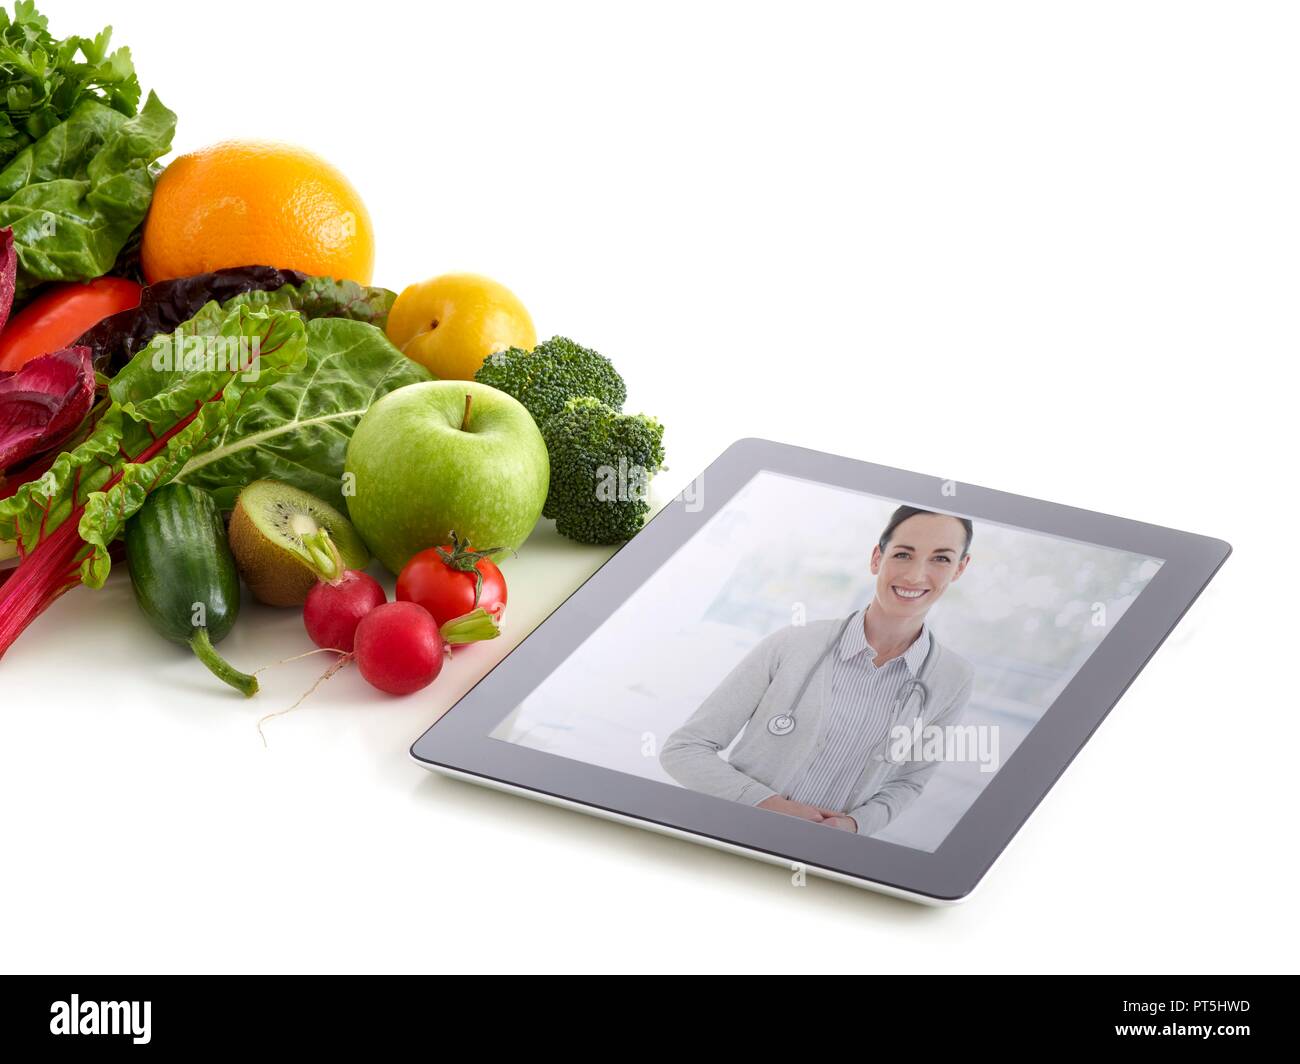 Frutas y hortalizas frescas con imagen del médico sobre la tableta digital, foto de estudio. Foto de stock